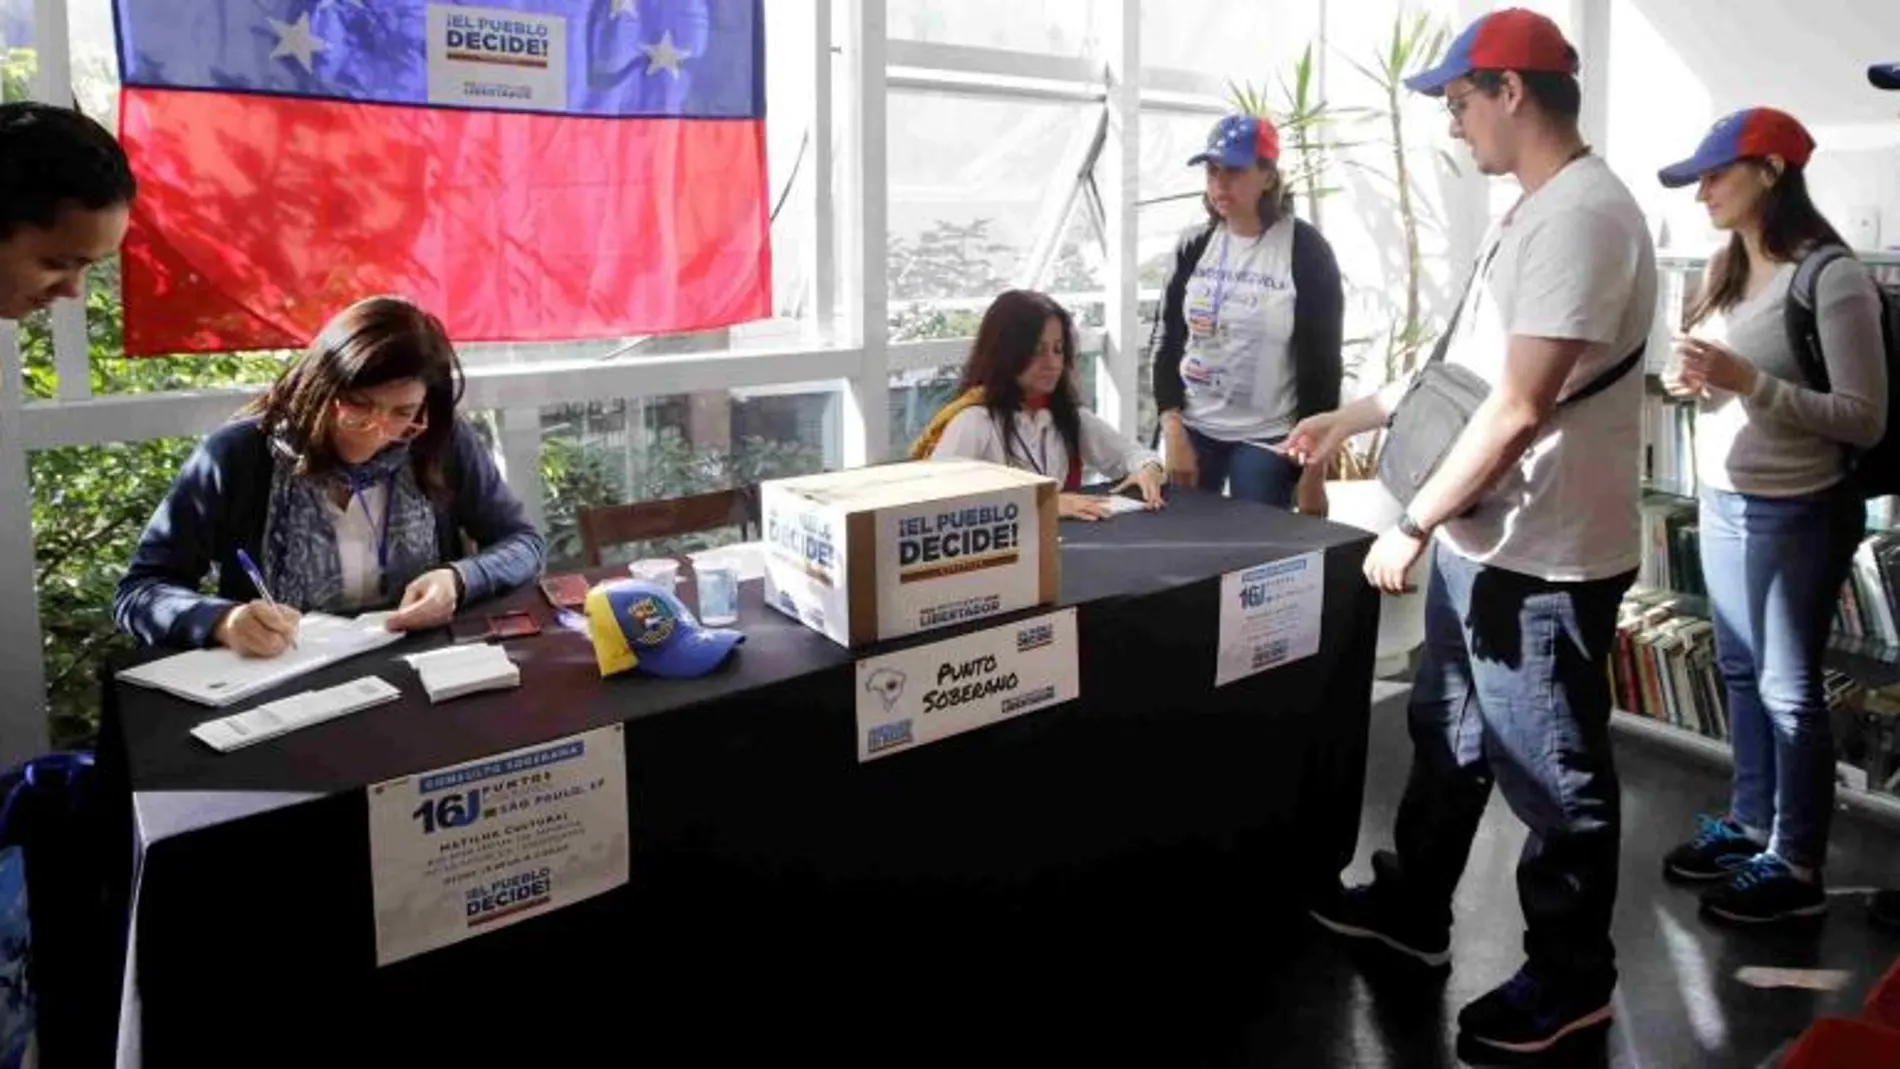 Masiva participación en la consulta popular contra Maduro en Venezuela